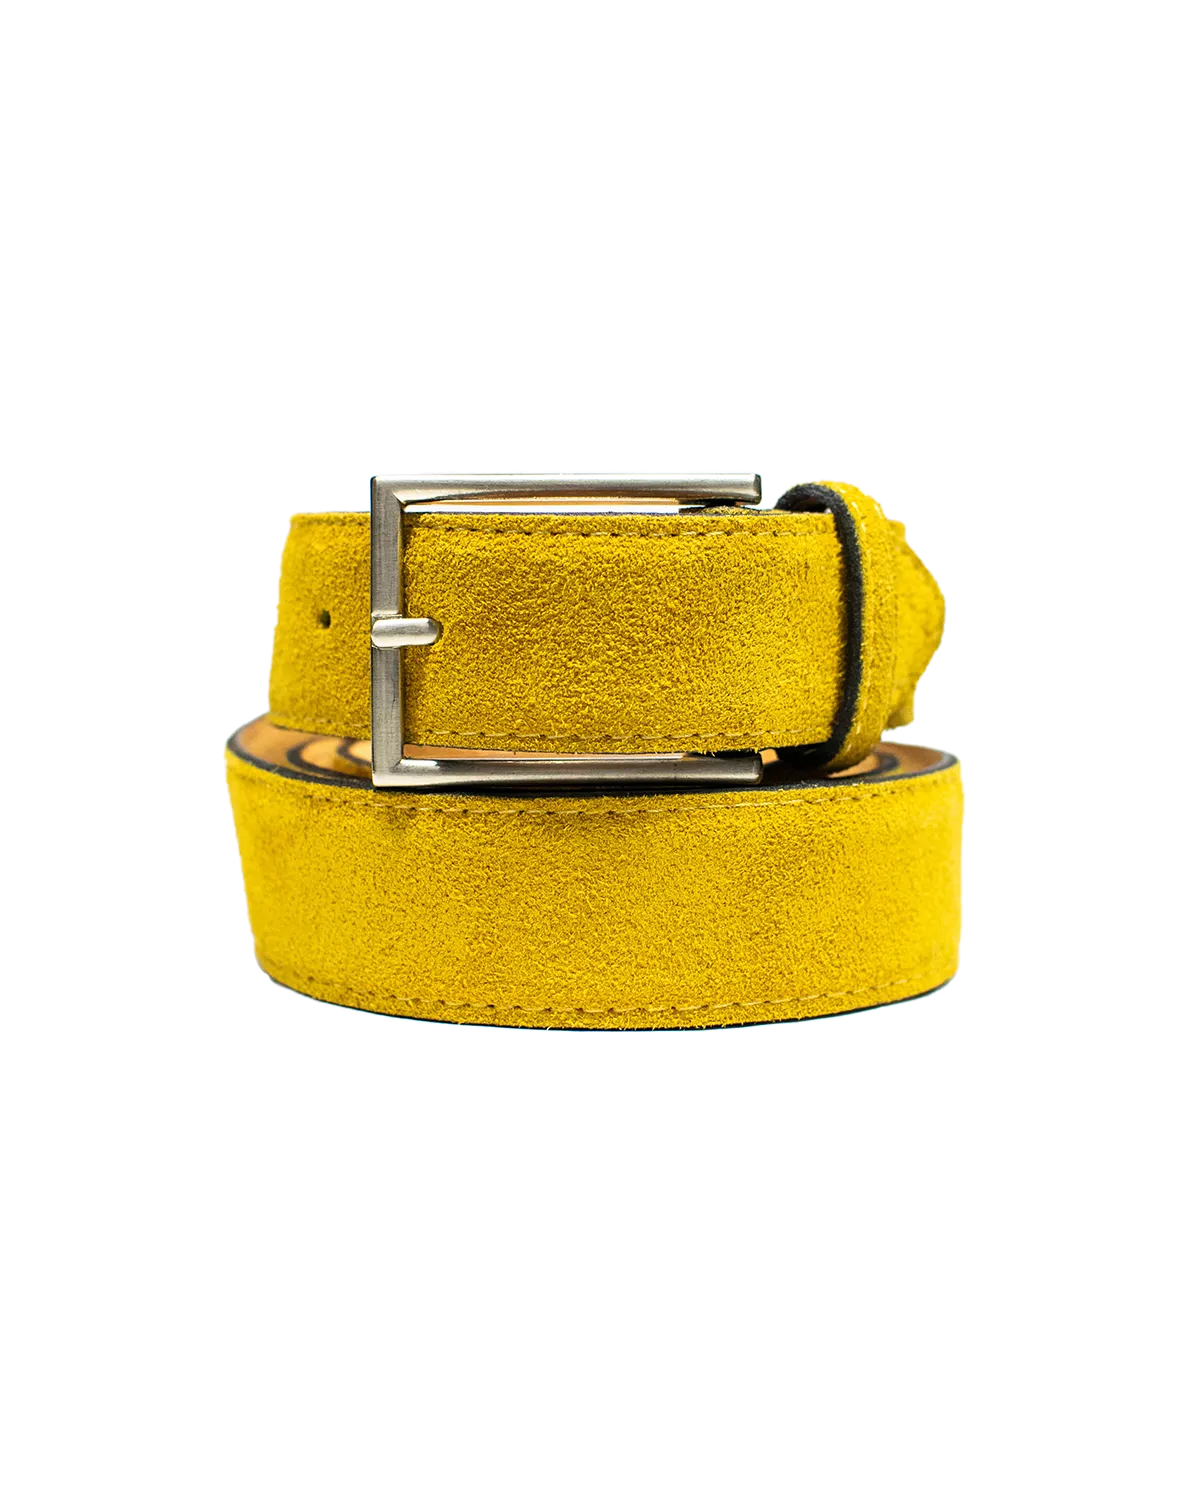 Cinturón Clásico de Gamuza en color amarillo